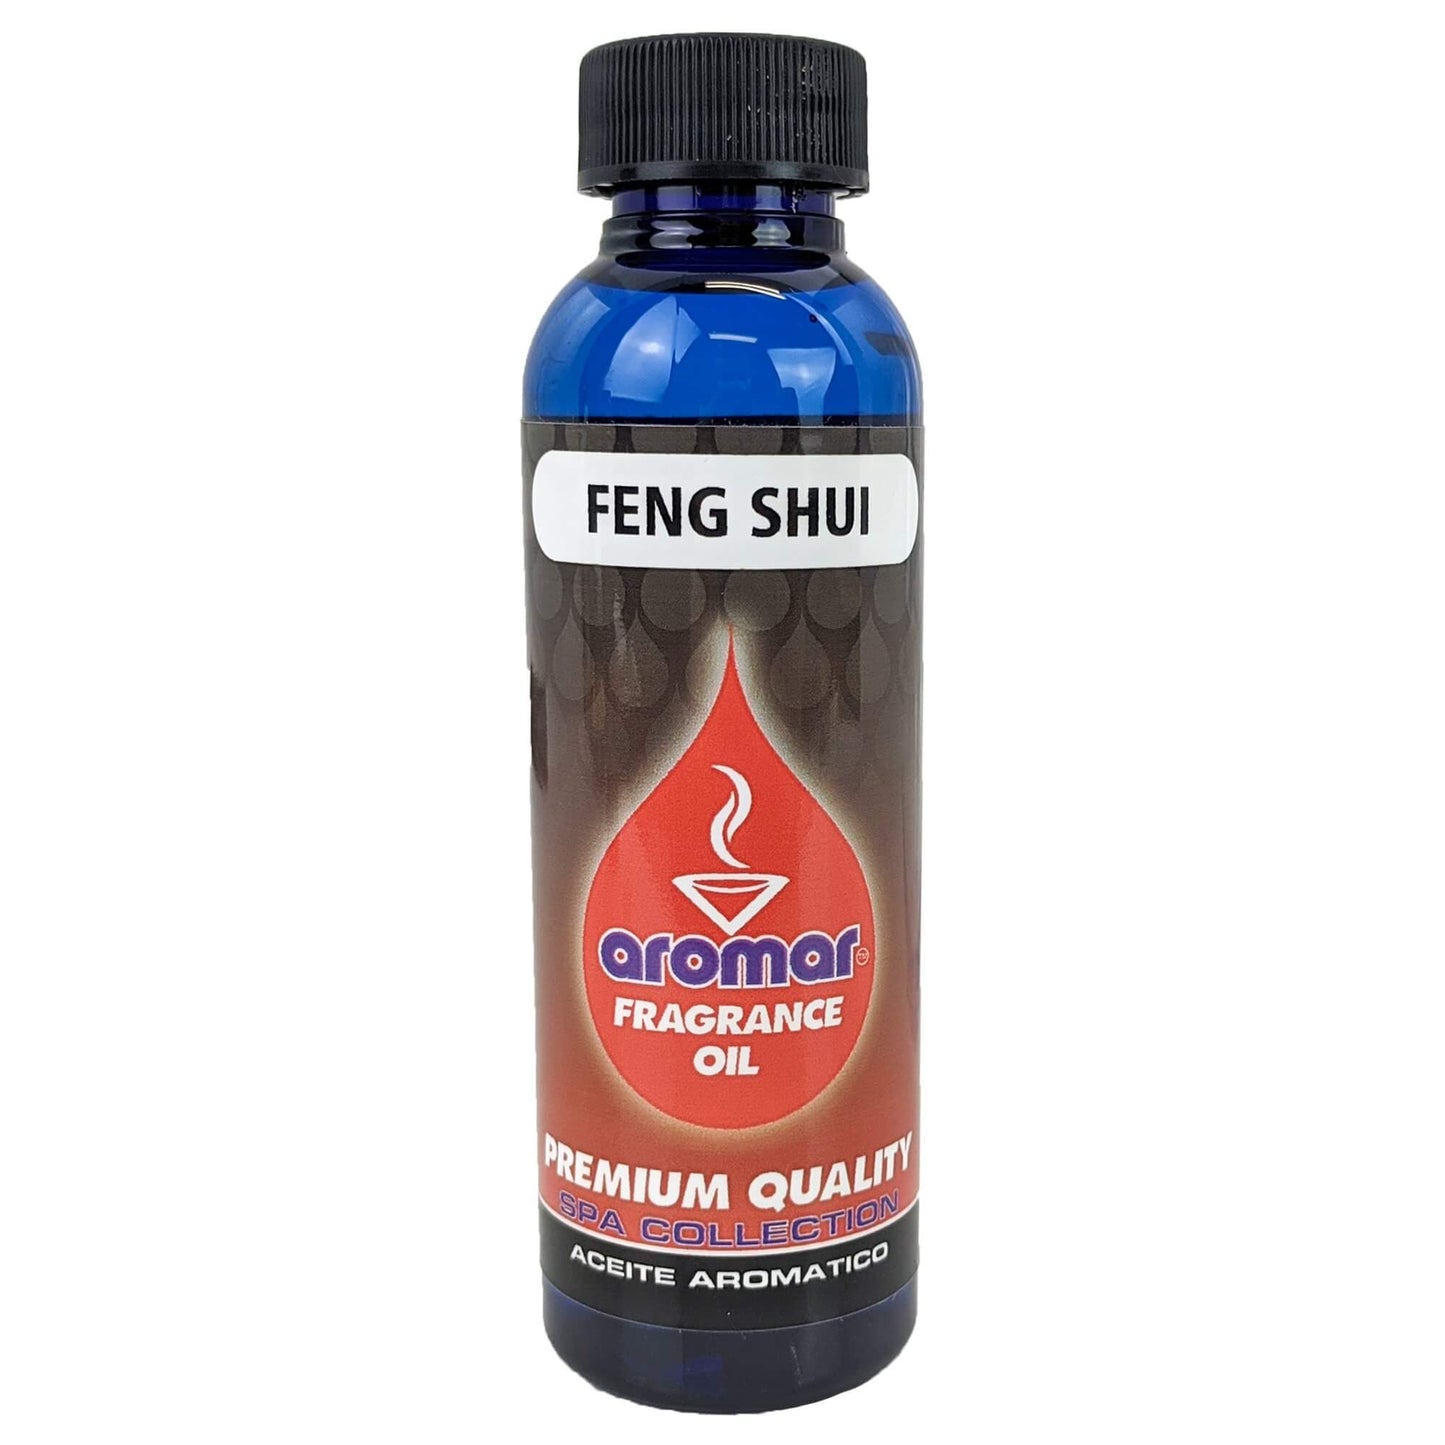 Feng Shui Scent Aromar Fragrance Oil, 2oz/60ml